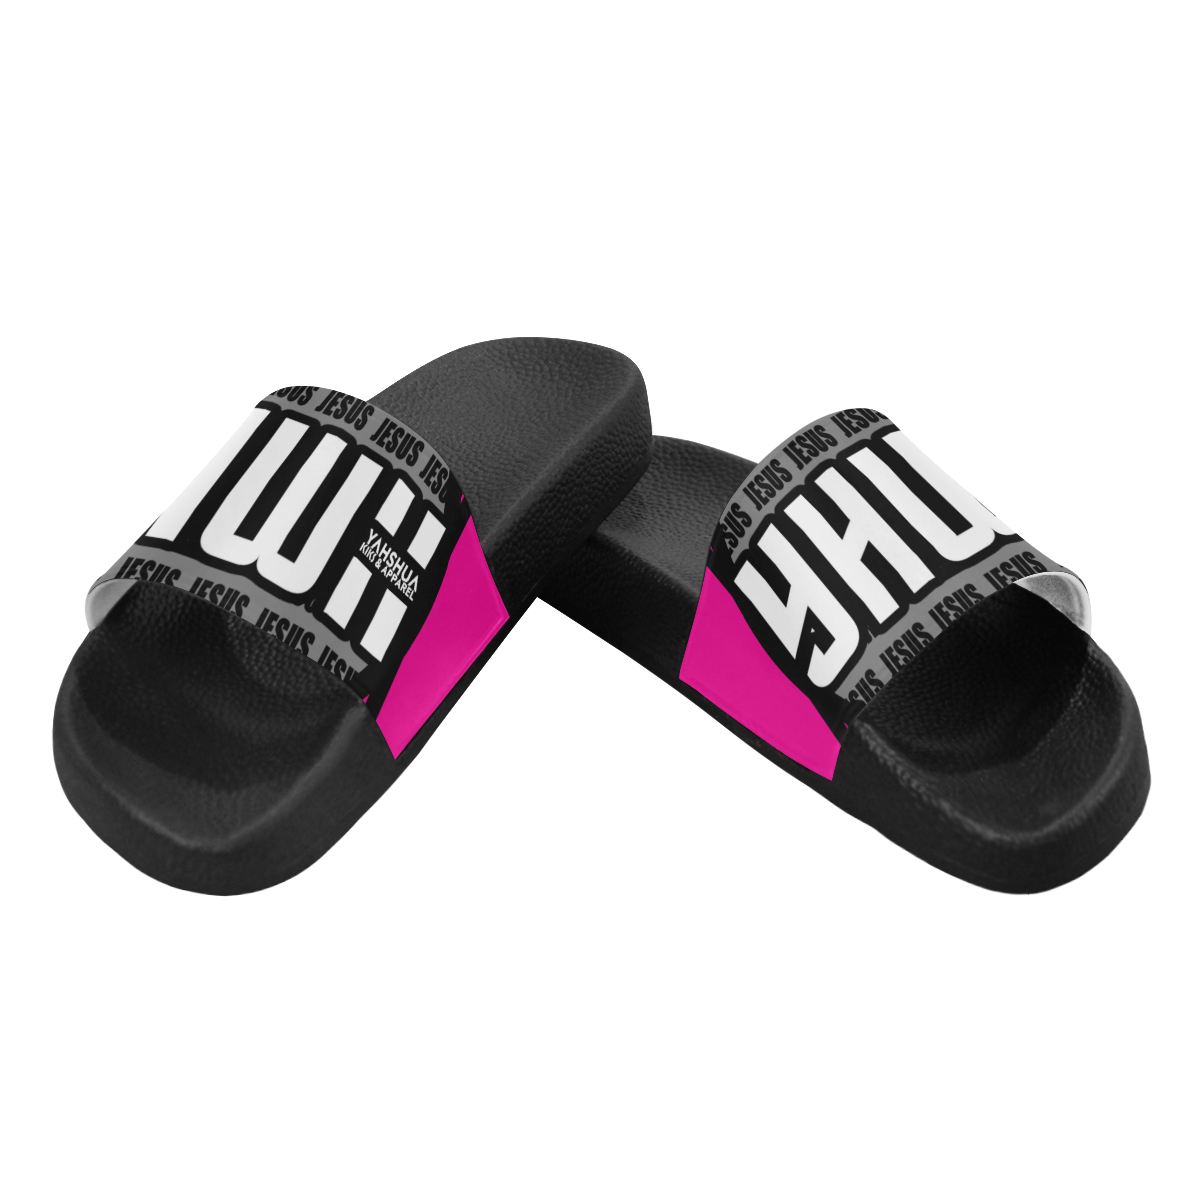 Meero Pink Women's Slide Sandals (Model 057)